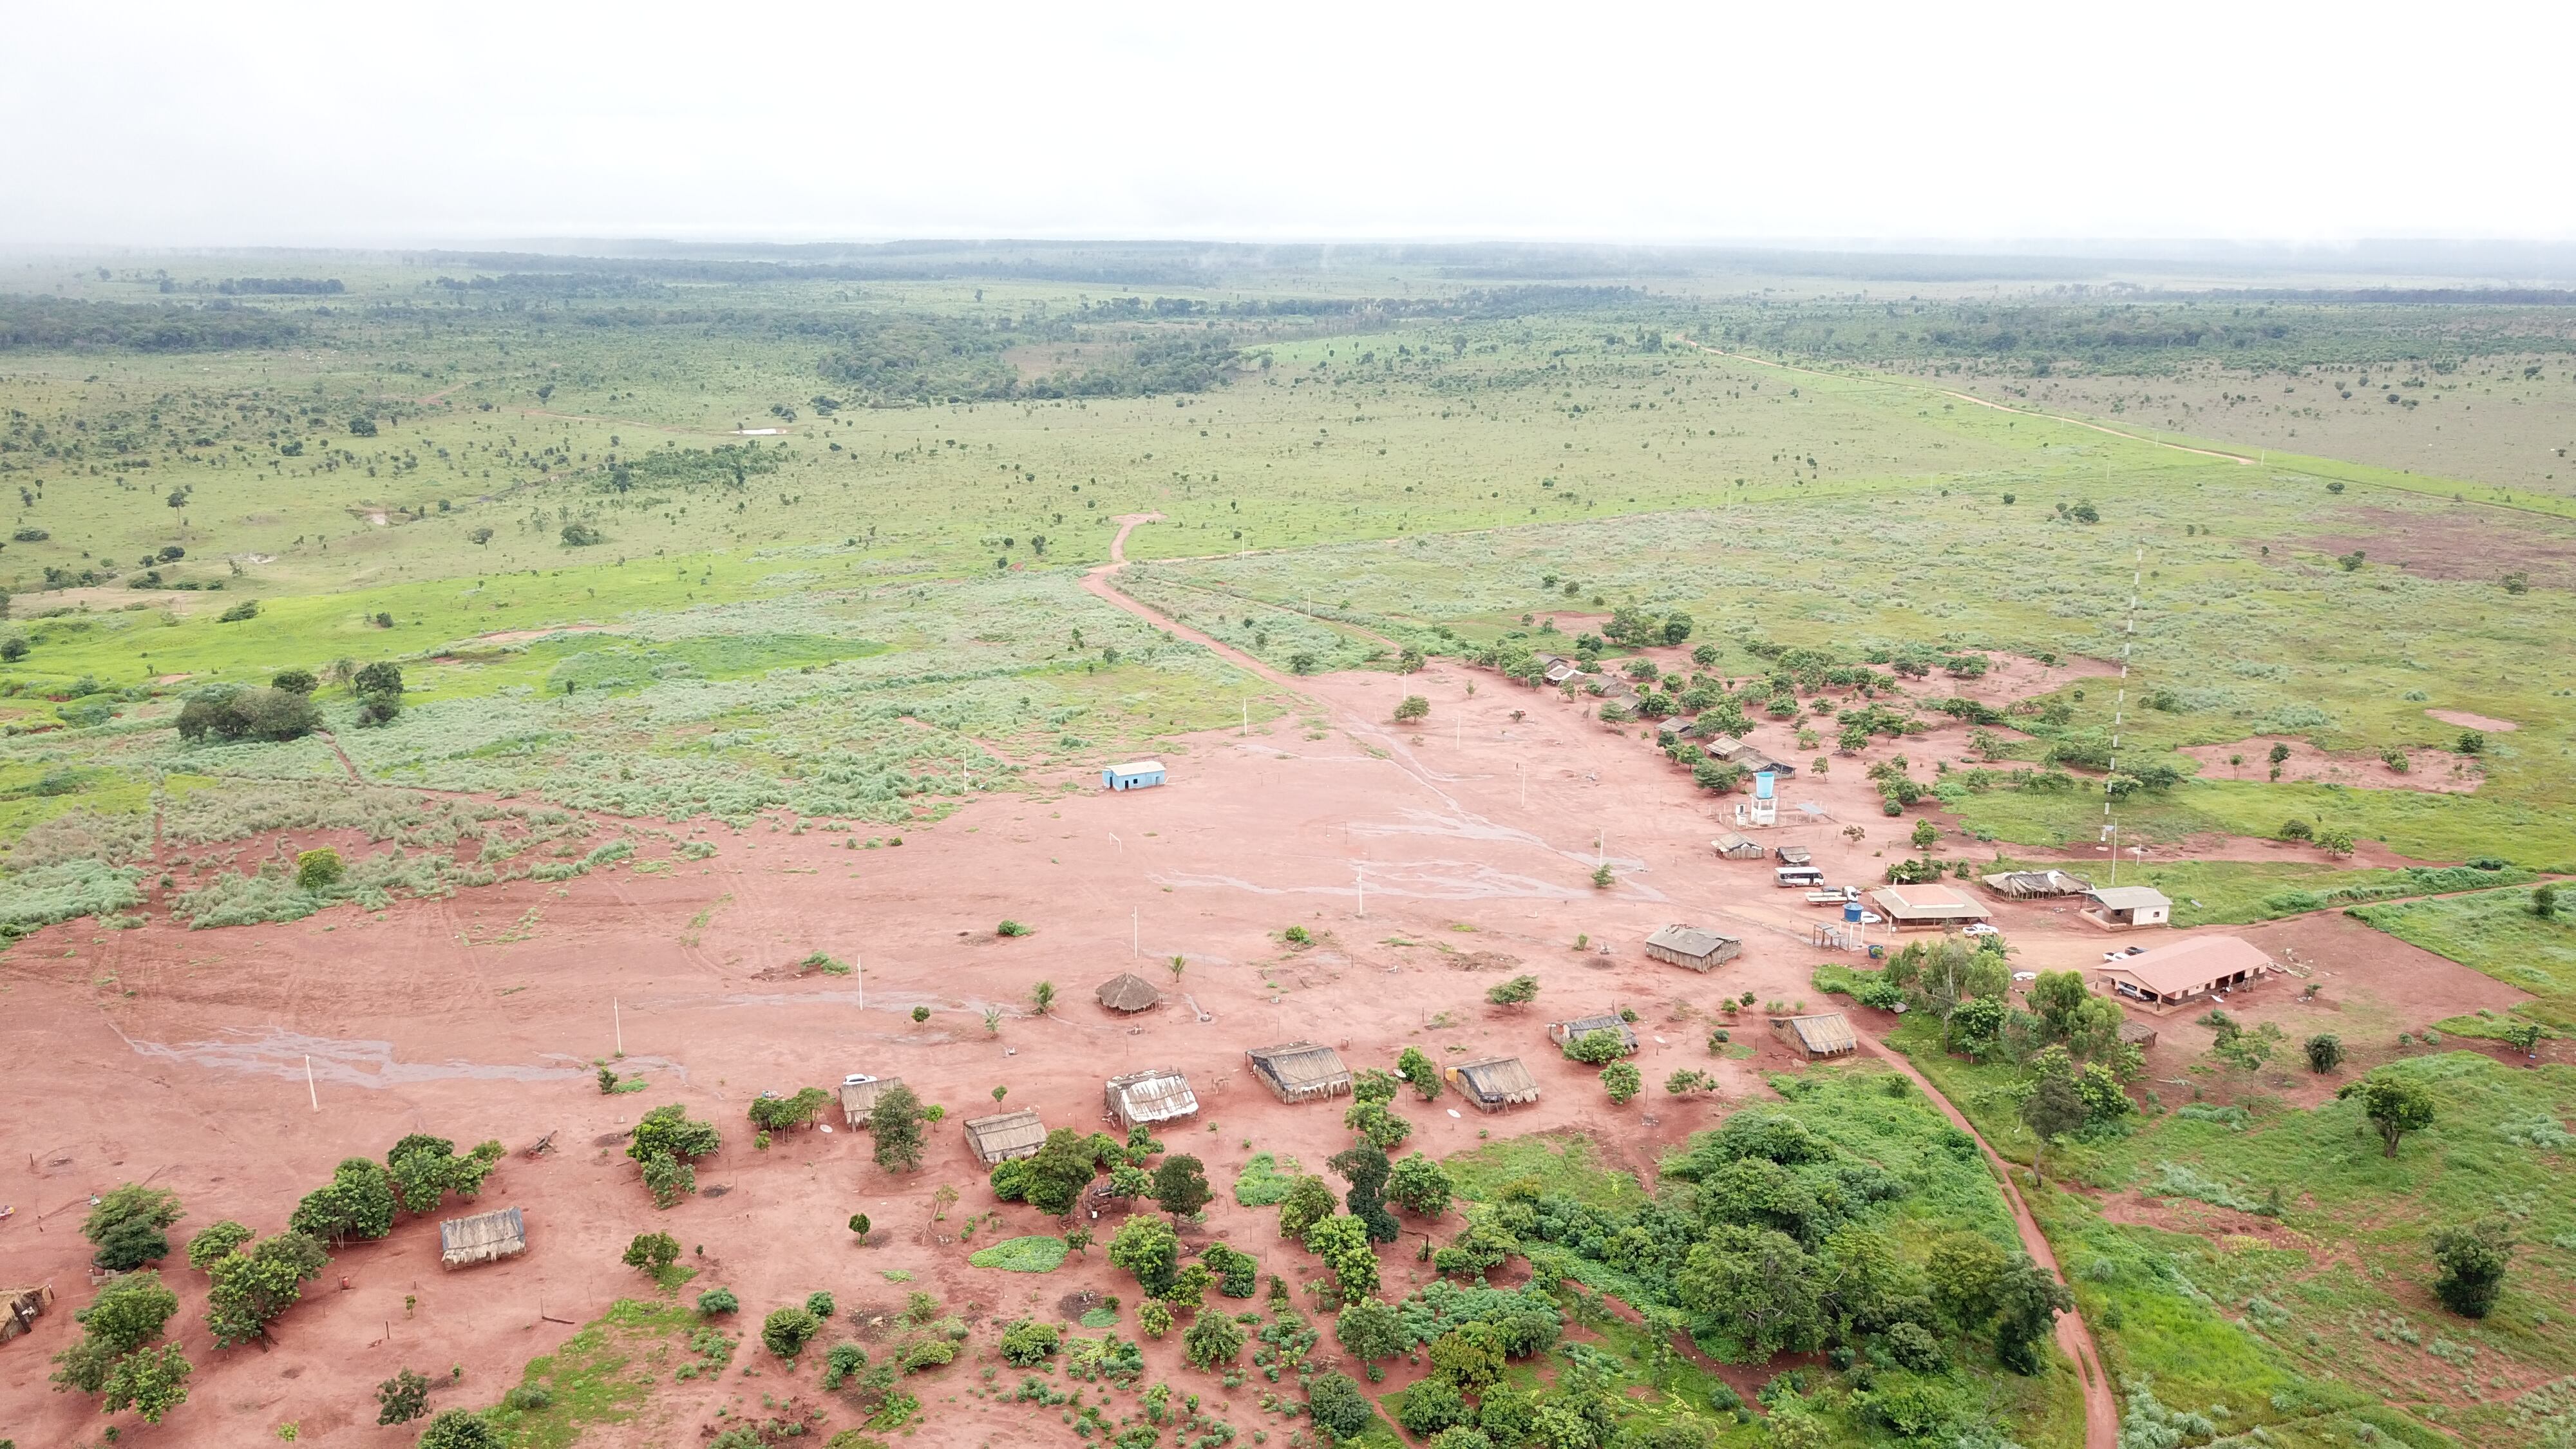 Vista aérea de uno de los pueblos de la tierra Marãiwatsédé en enero de 2022. Este es el territorio indígena más deforestado de la Amazonía.